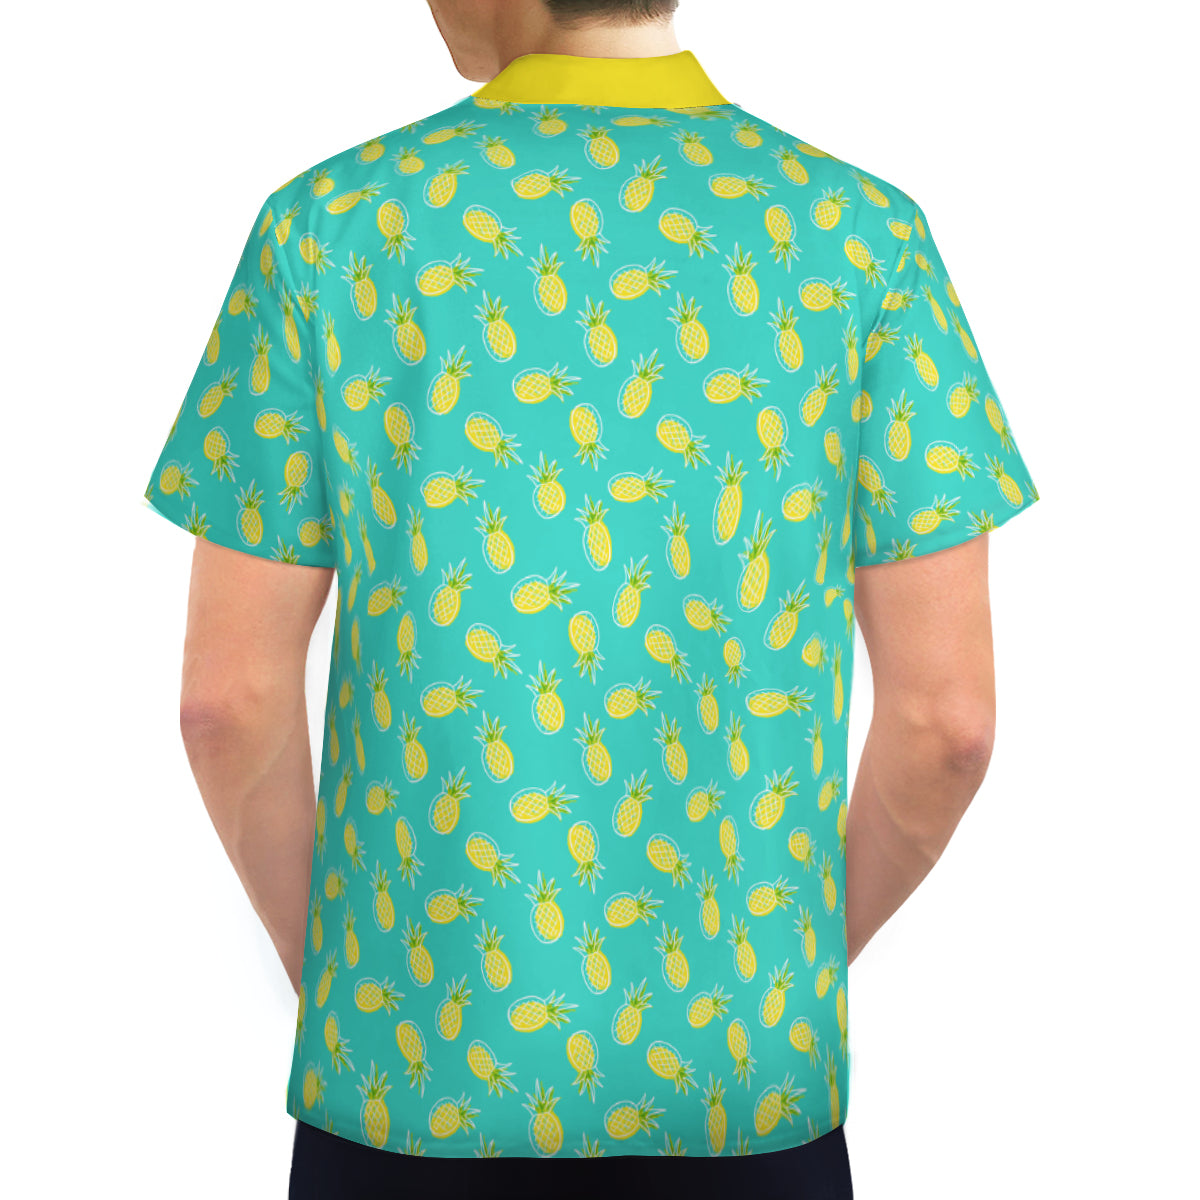 Pineapple Shirt Men, Tropical Shirt Men,Retro Hawaiian Shirt Men,Turquoise Shirt Men, 60s Style Top,Retro Shirt,Vintage Style Pineapple Top